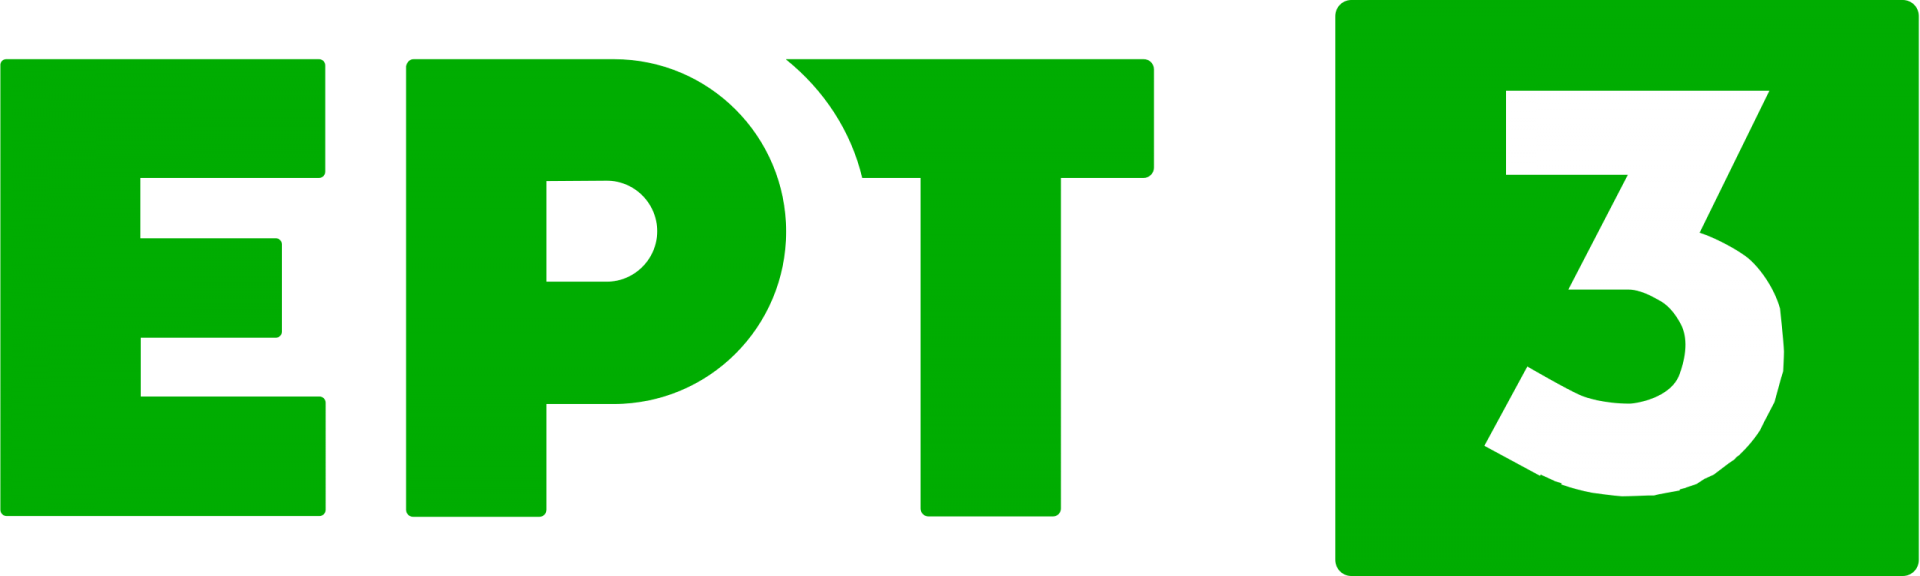 ERT3_logo_2020.svg.png